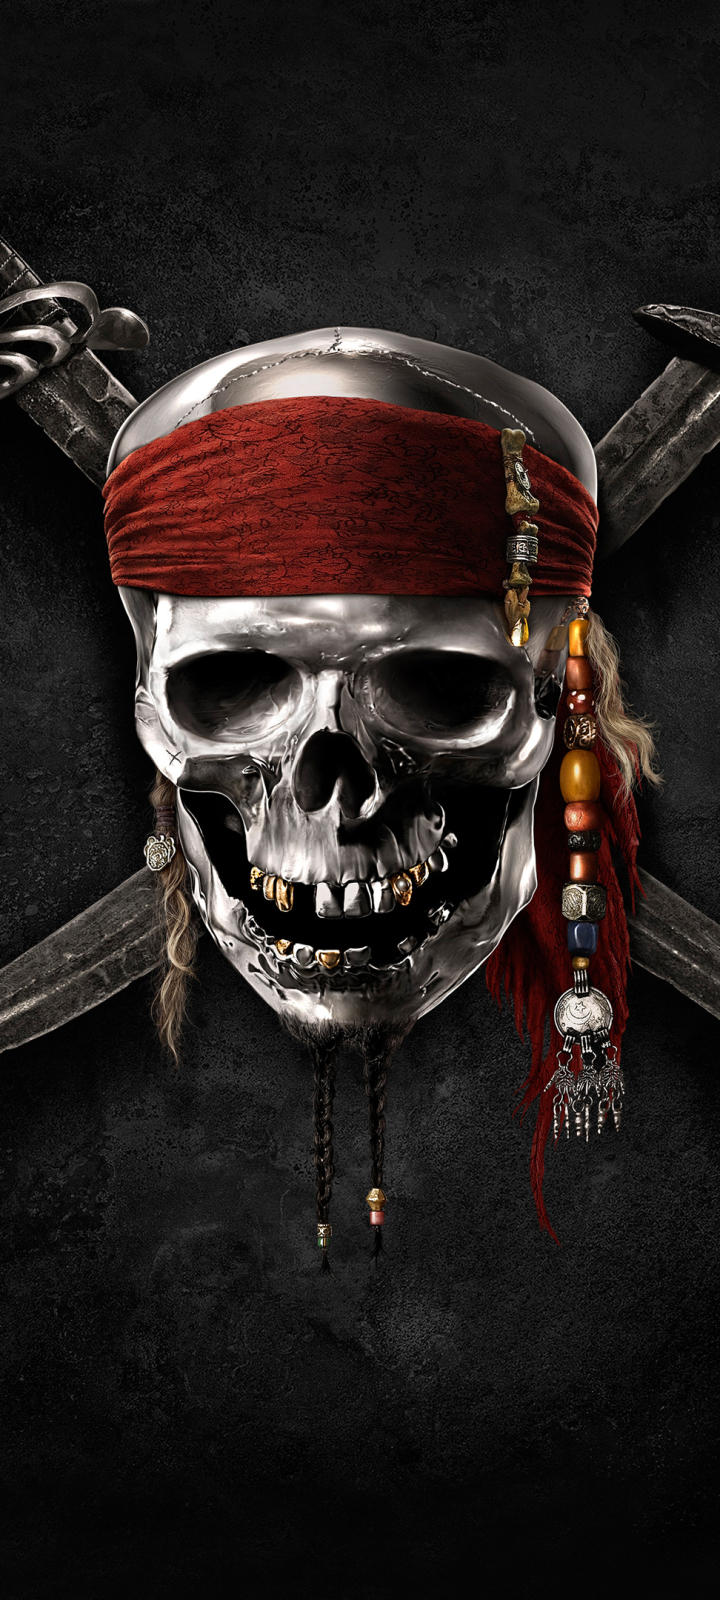 Descarga gratuita de fondo de pantalla para móvil de Piratas Del Caribe, Películas.